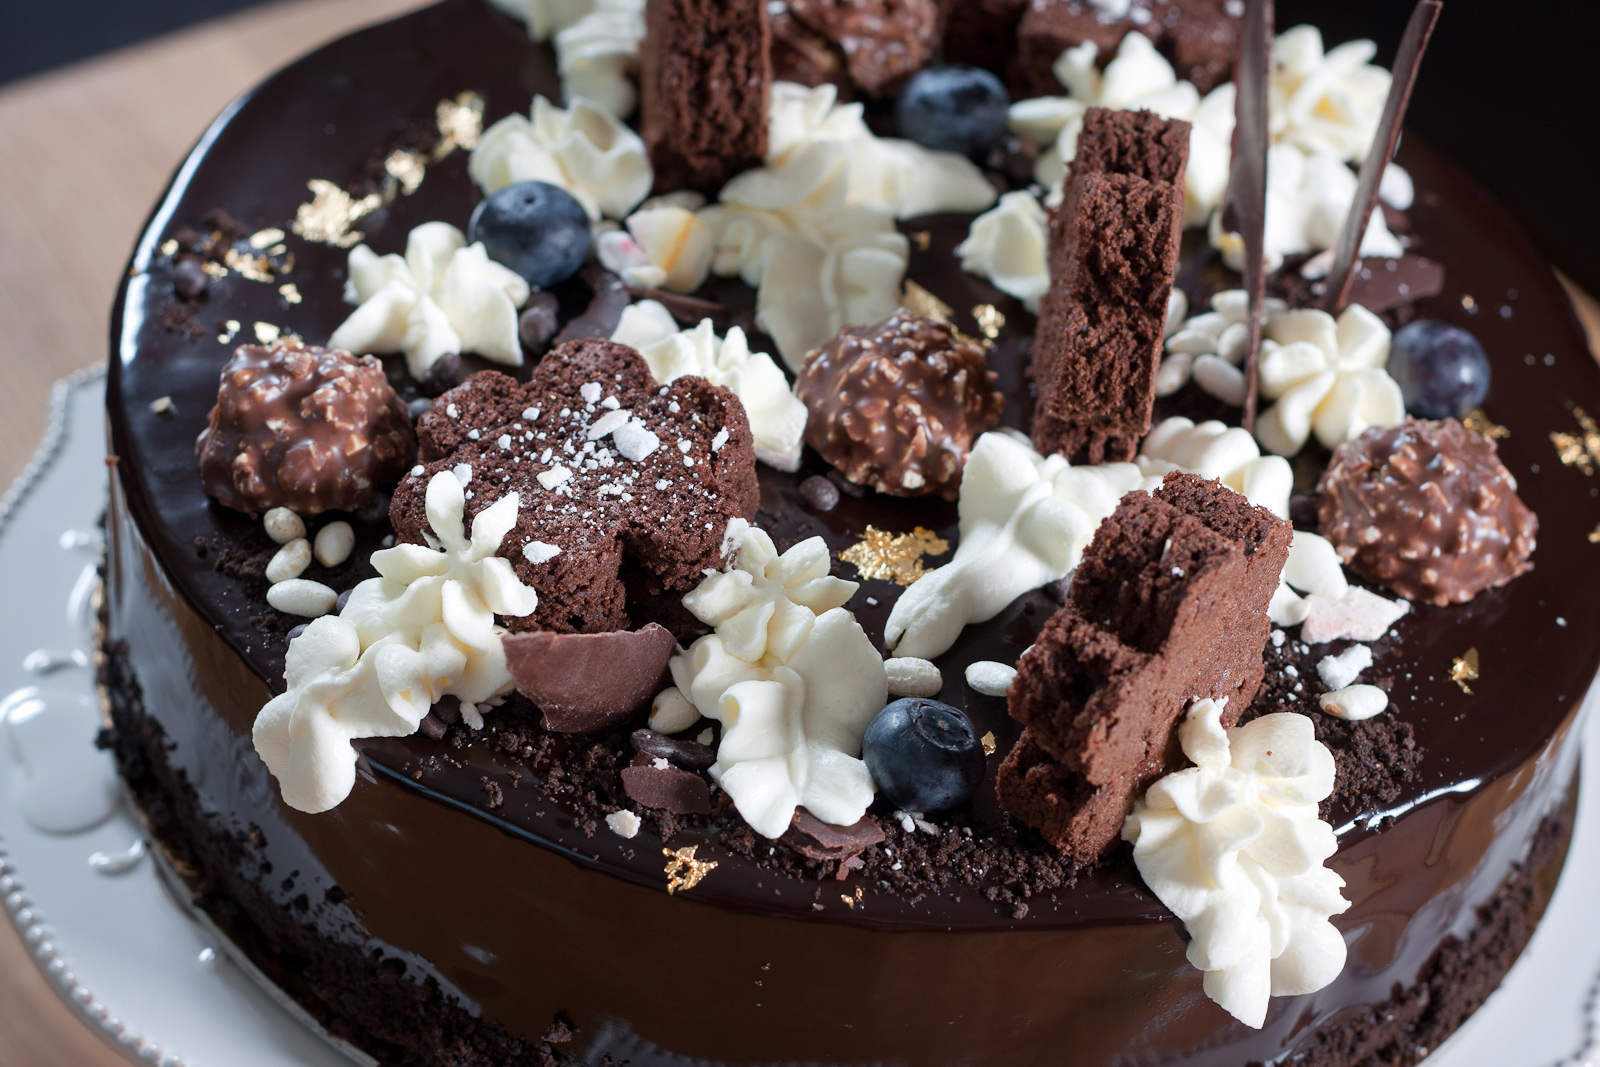 Tėčio gimtadienio tortas arba Šokoladinis tortas su traškiu "praline" sluoksniu